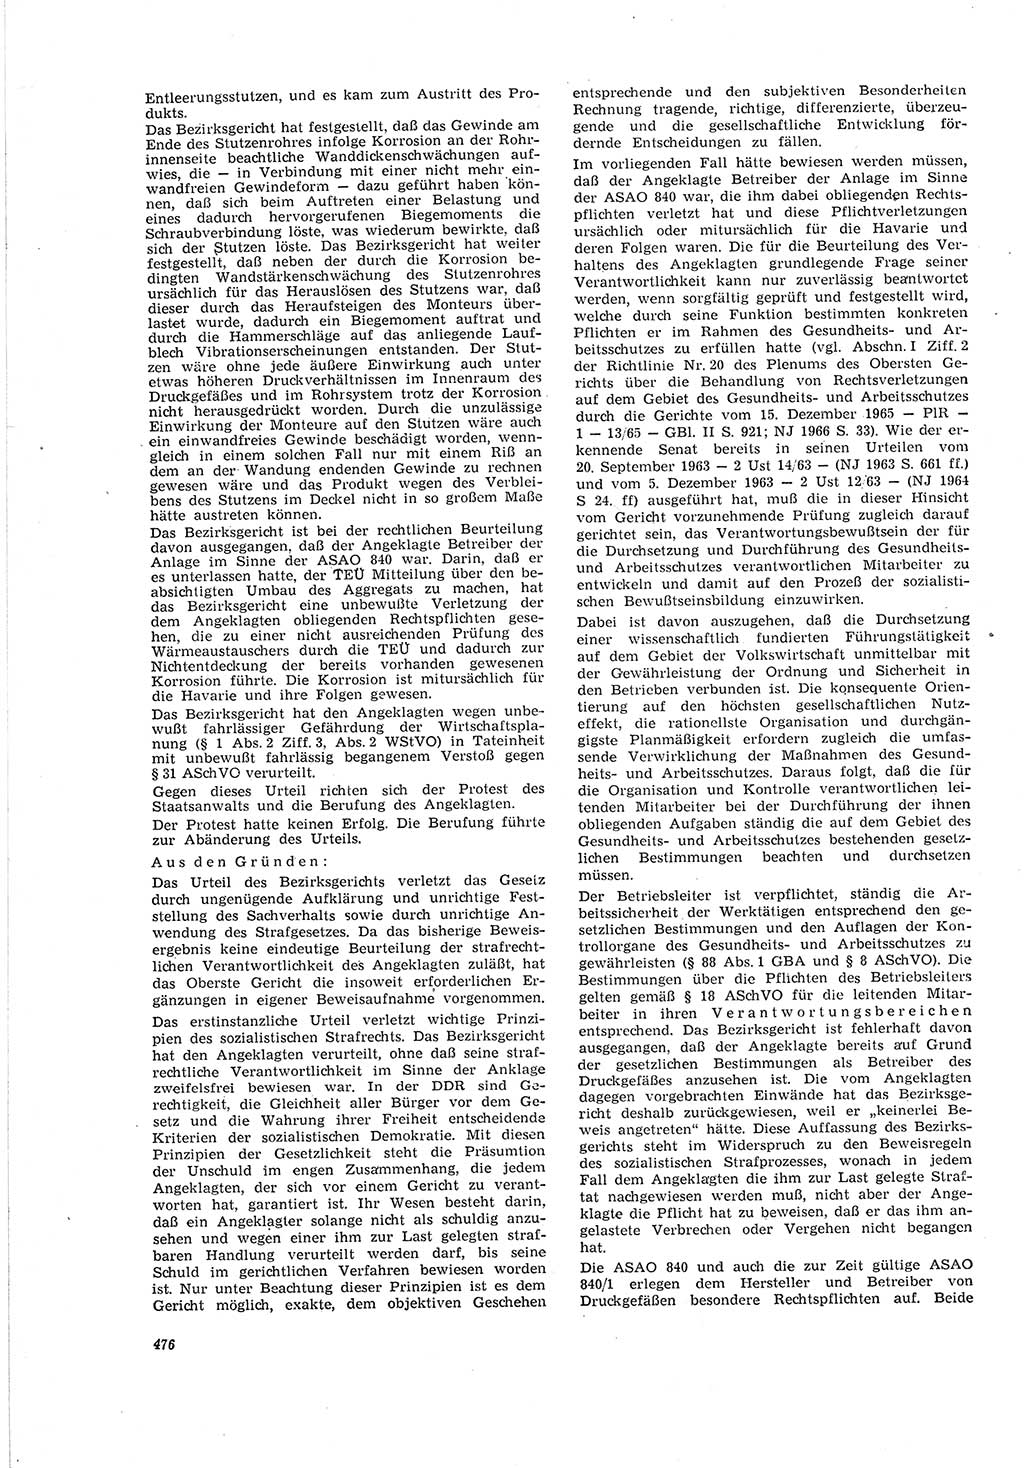 Neue Justiz (NJ), Zeitschrift für Recht und Rechtswissenschaft [Deutsche Demokratische Republik (DDR)], 20. Jahrgang 1966, Seite 476 (NJ DDR 1966, S. 476)